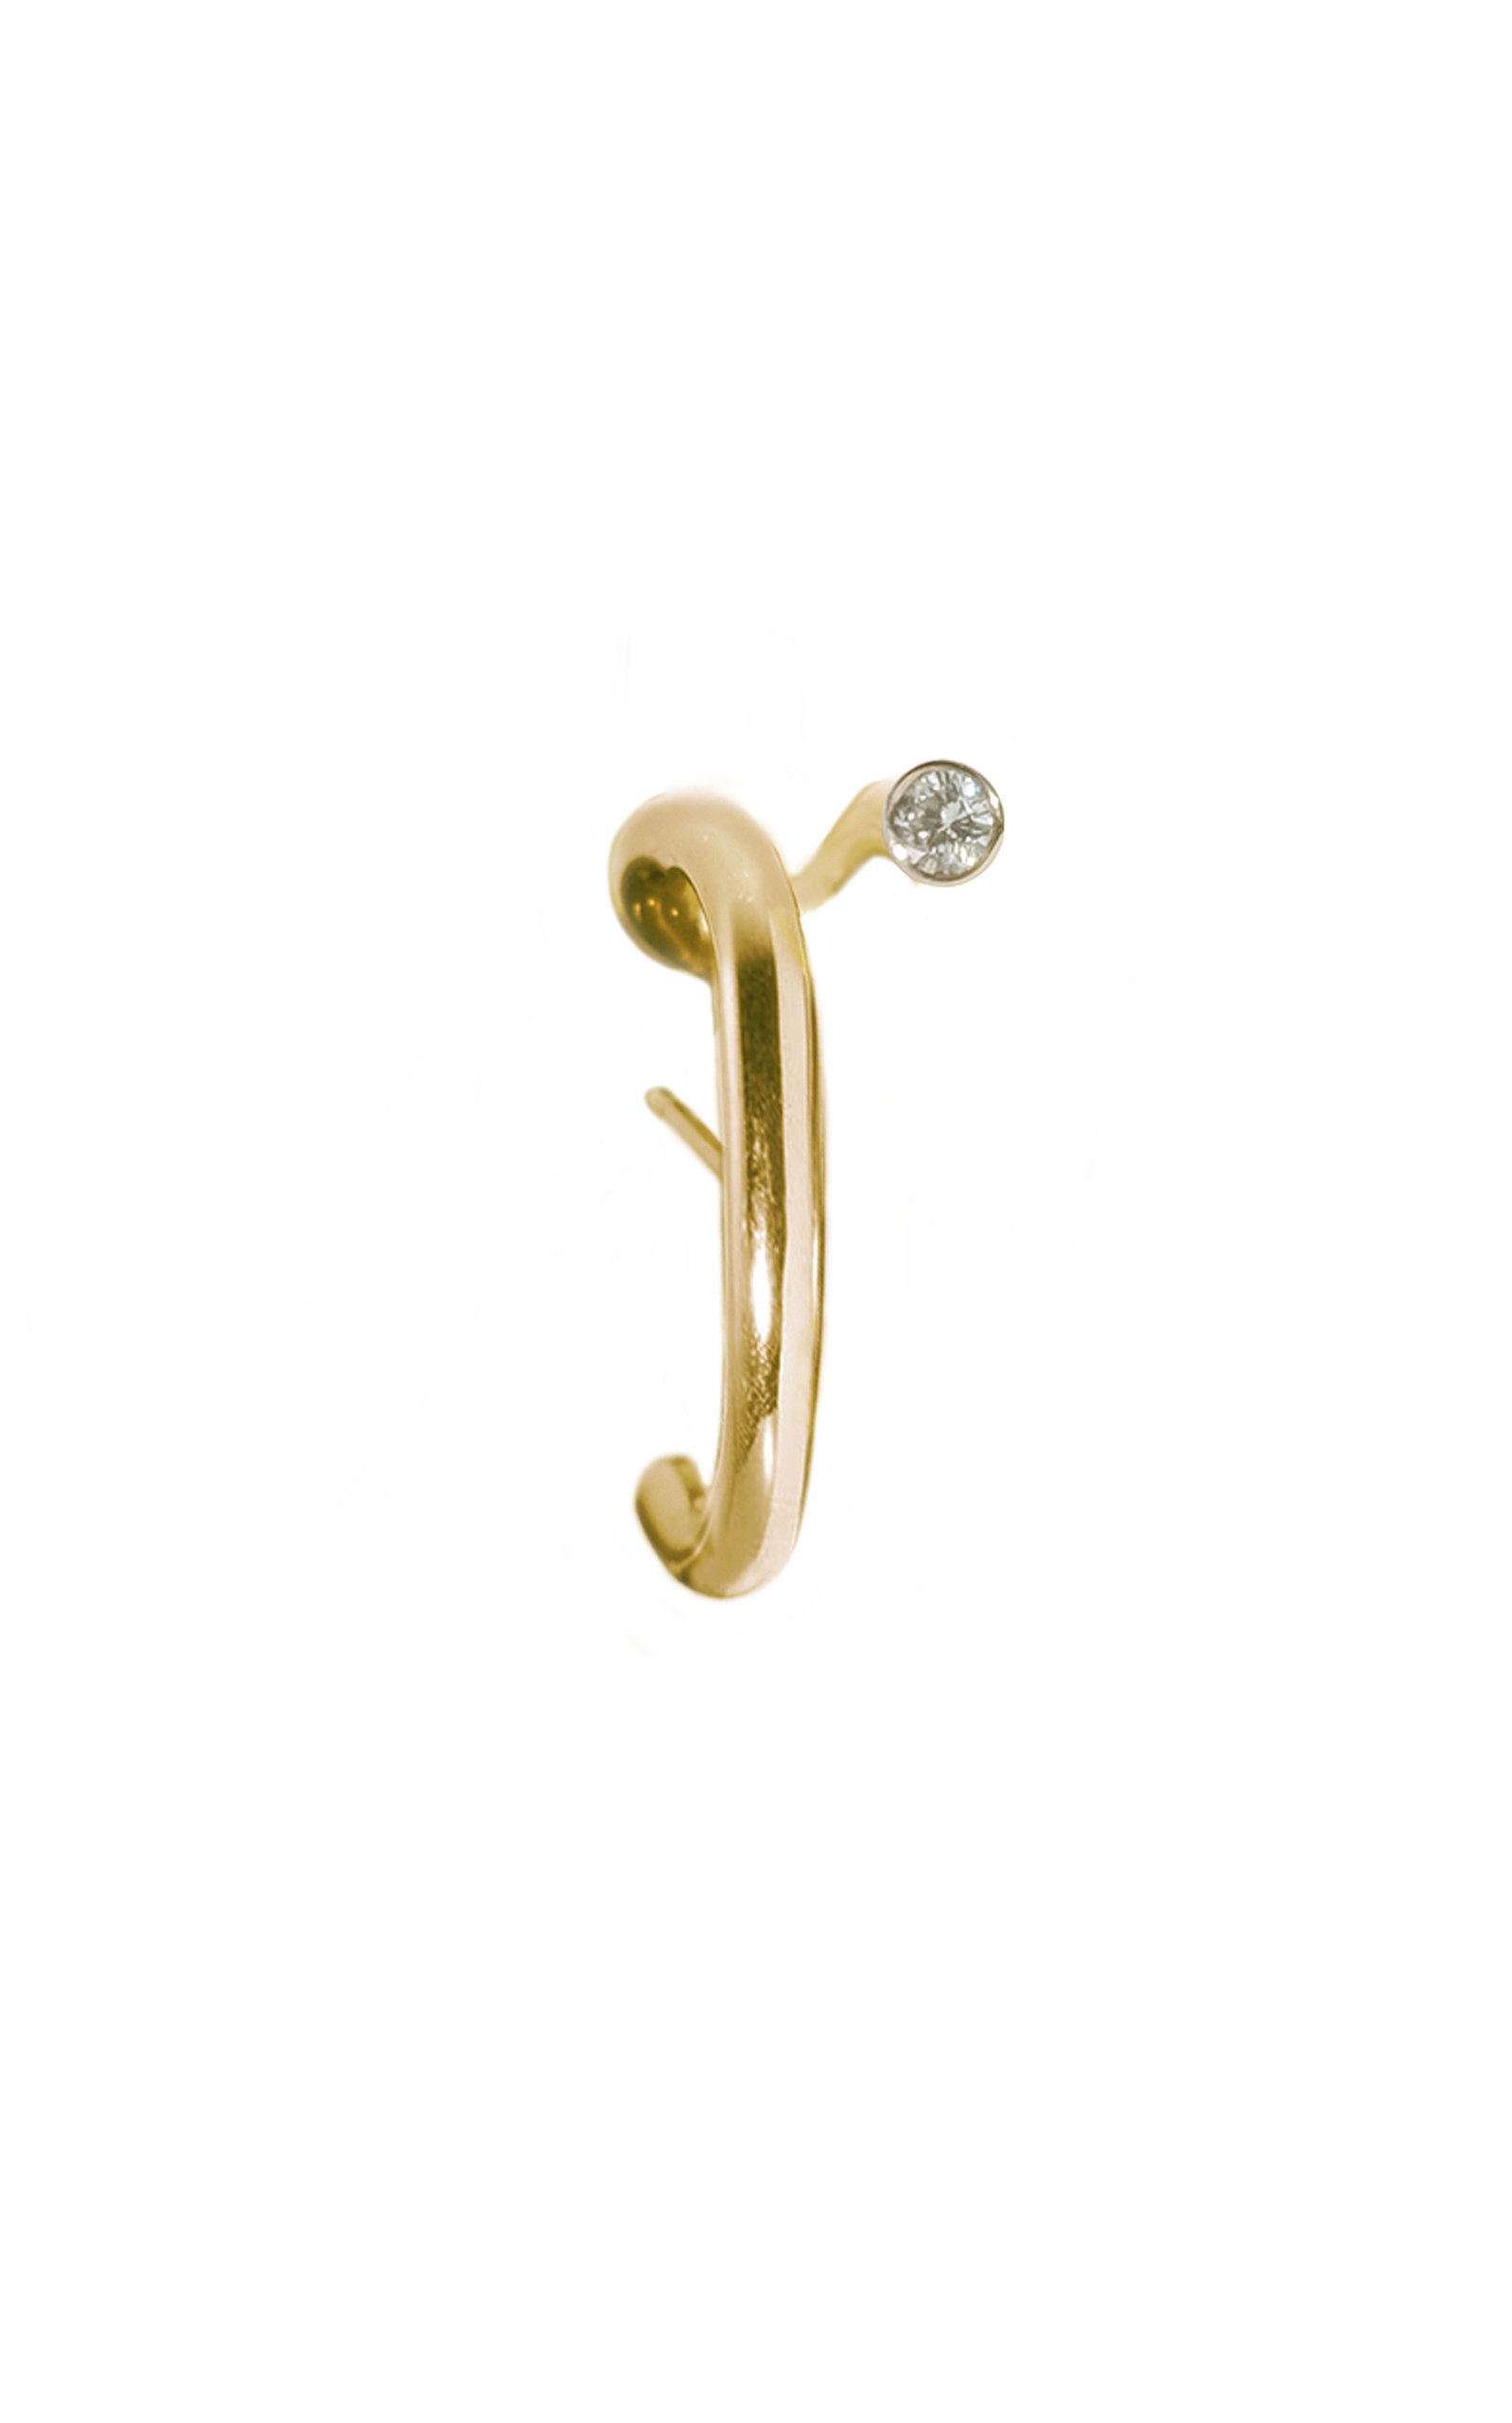 Katkim 18k Yellow Gold Arena Diamond Earring